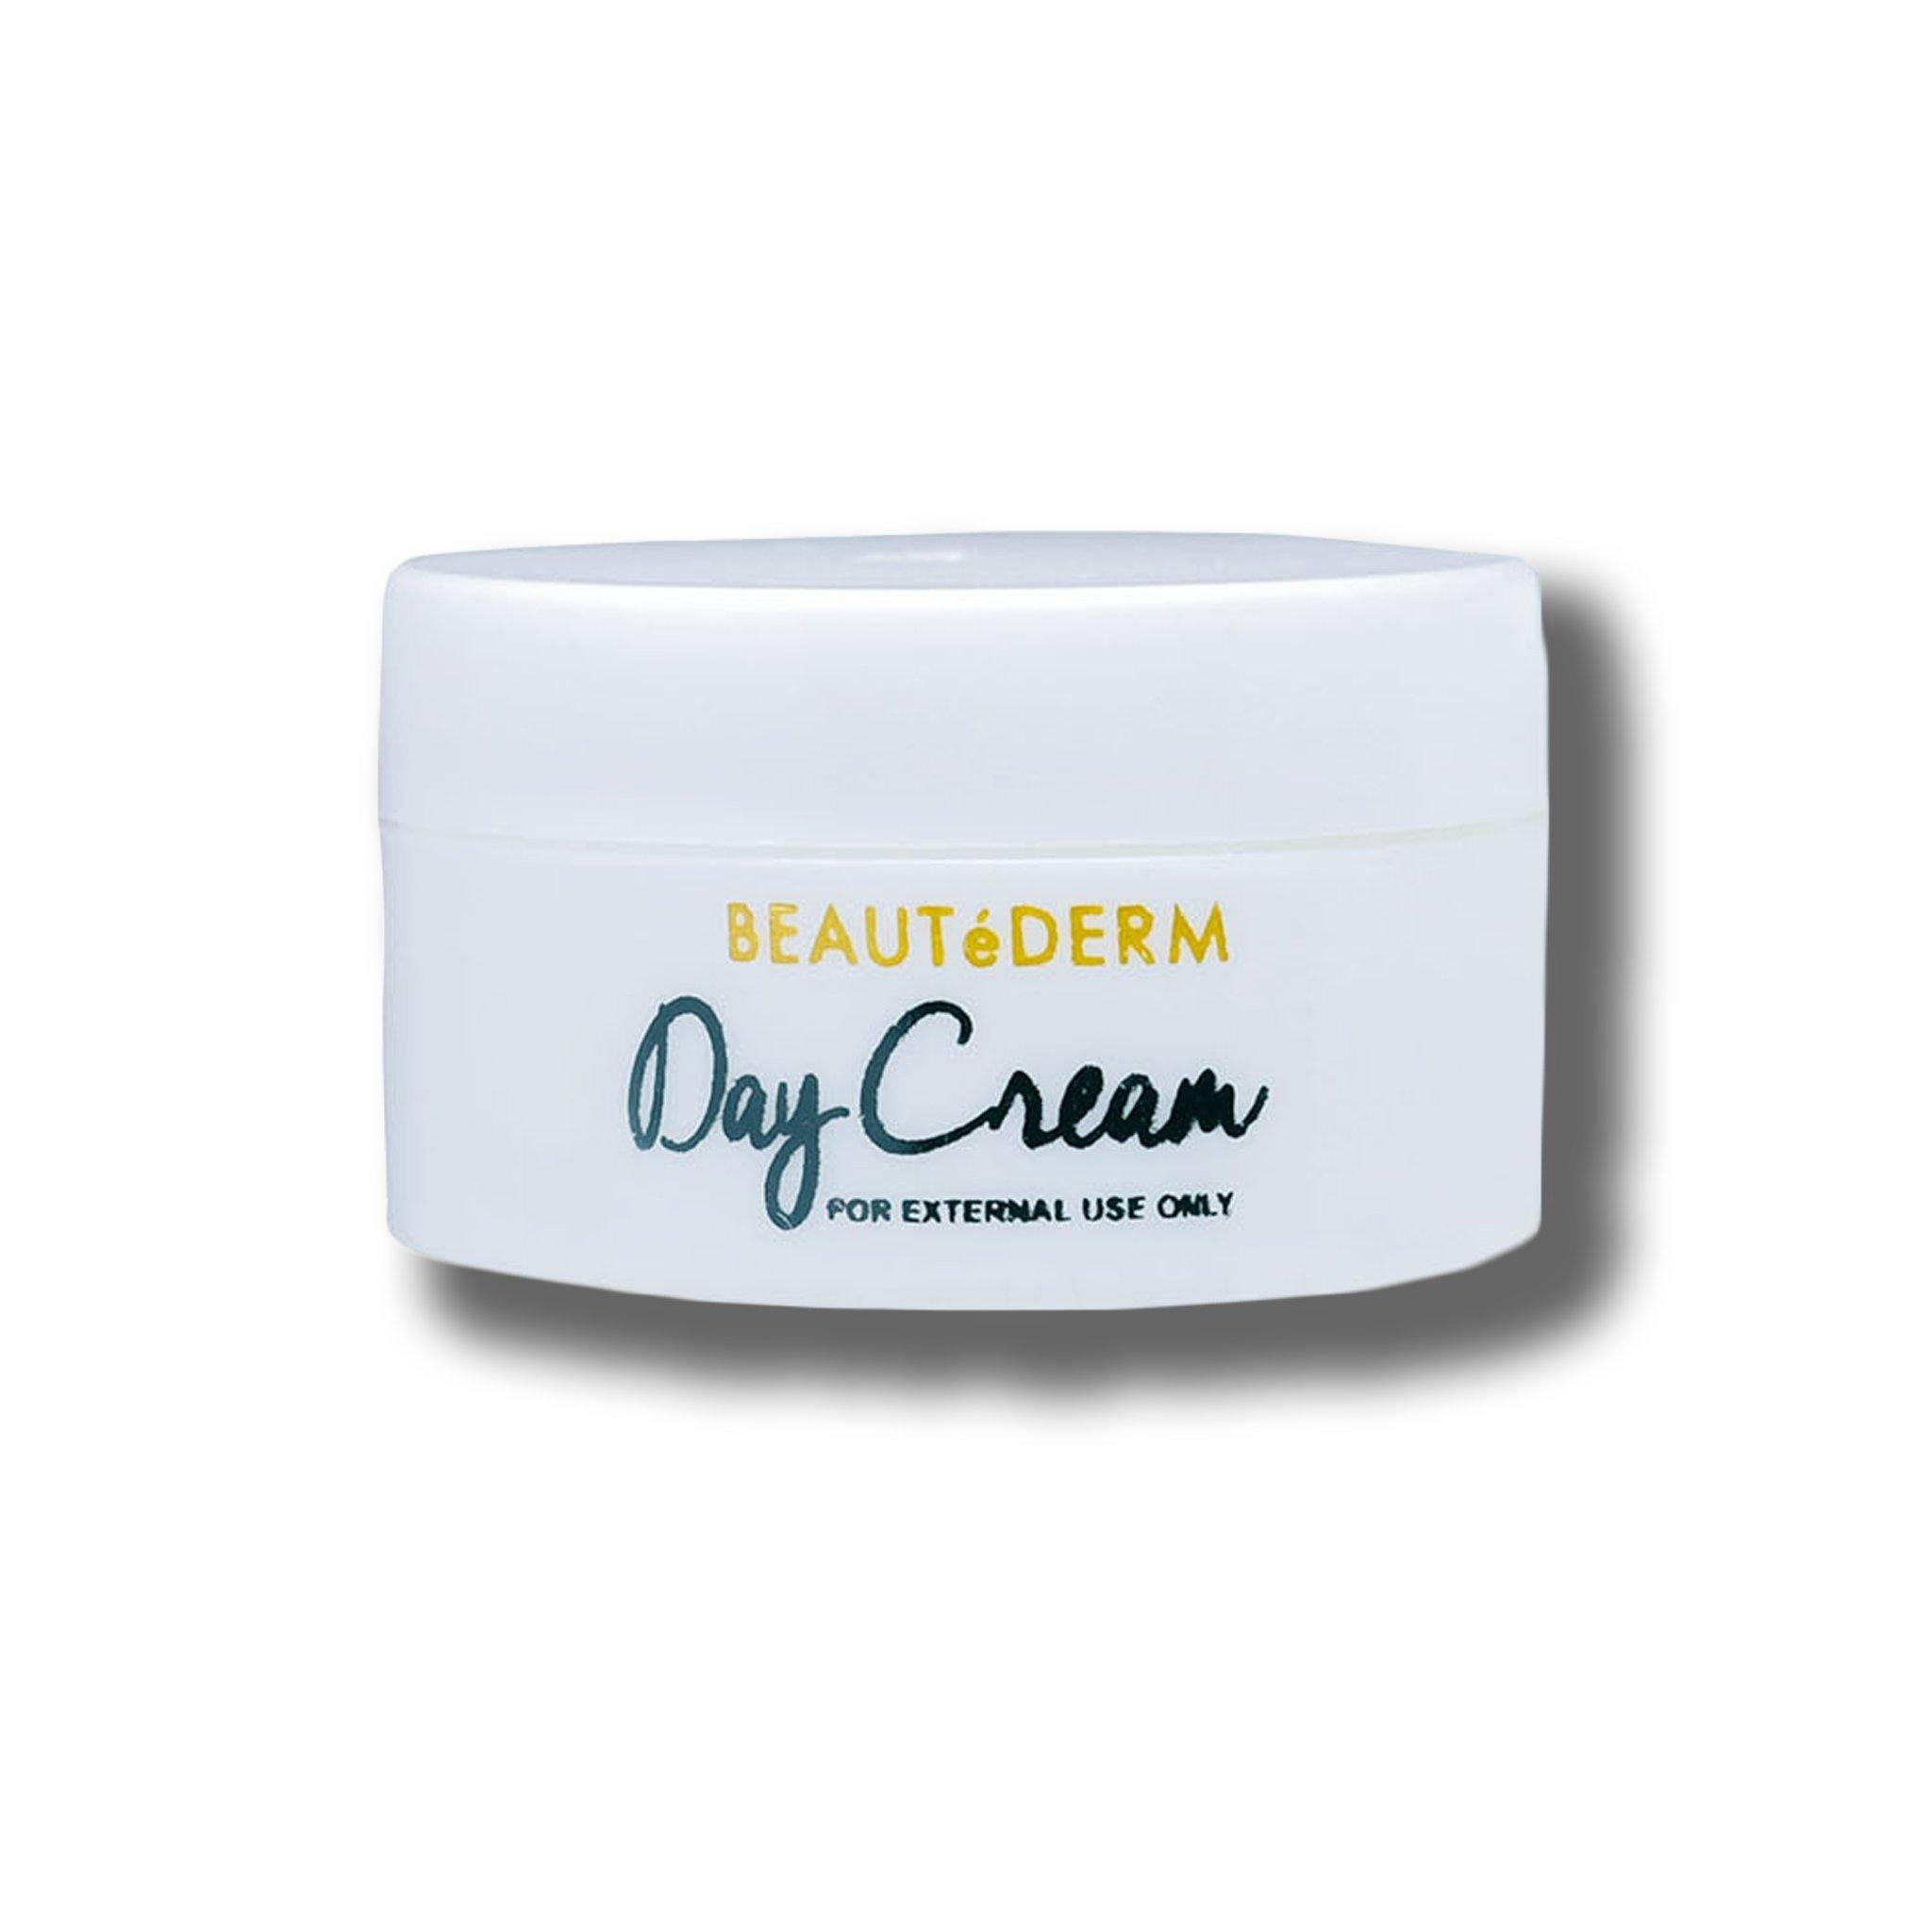 Day Cream, 10g, by Beautederm